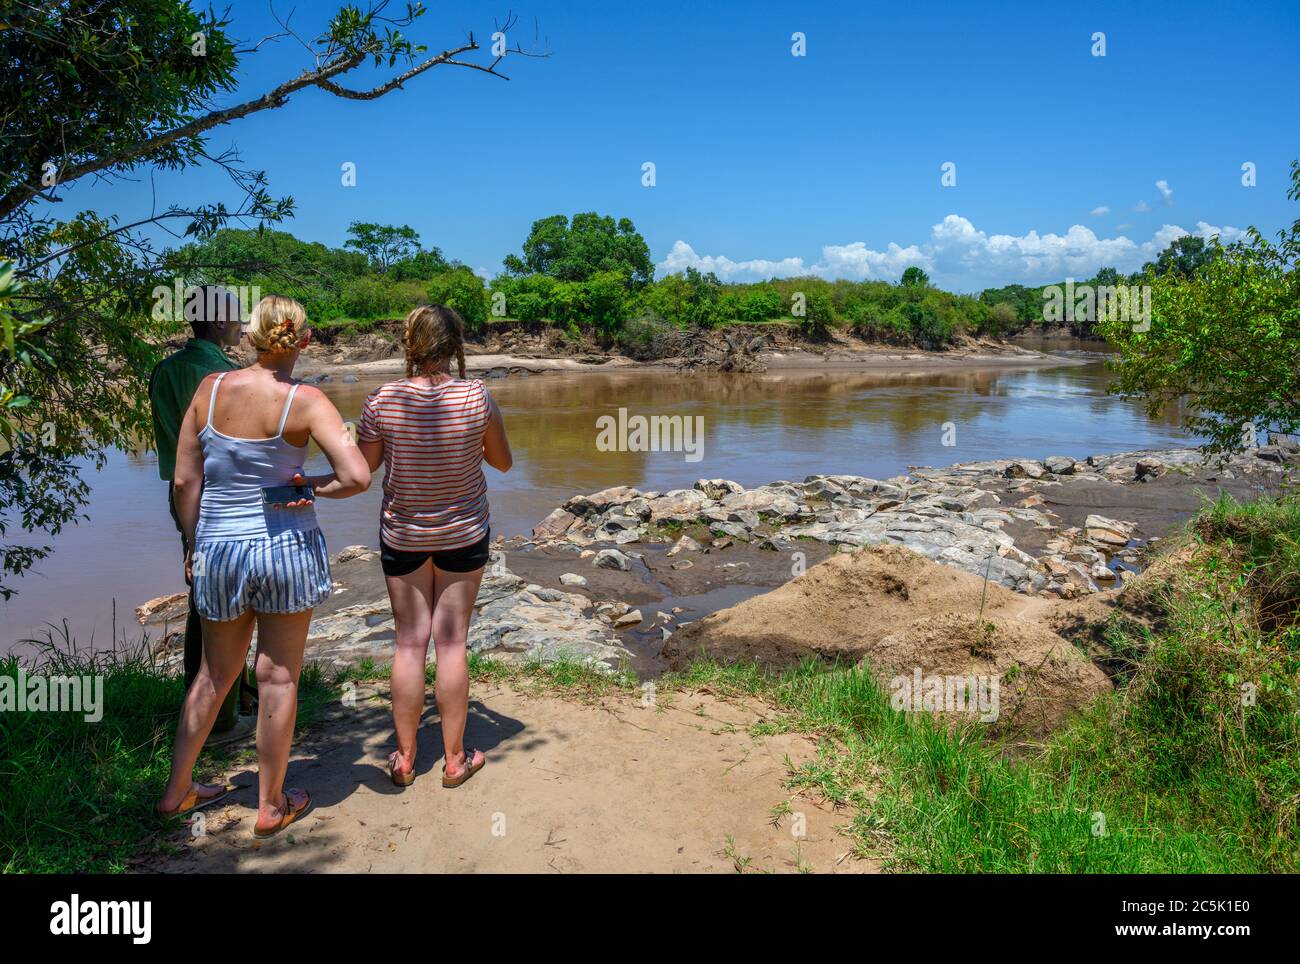 Turisti e ranger del parco che guardano agli ippopotami e ai coccodrilli nel fiume Mara, nel triangolo di Mara, nella riserva nazionale di Masai Mara, in Kenya, Africa orientale Foto Stock